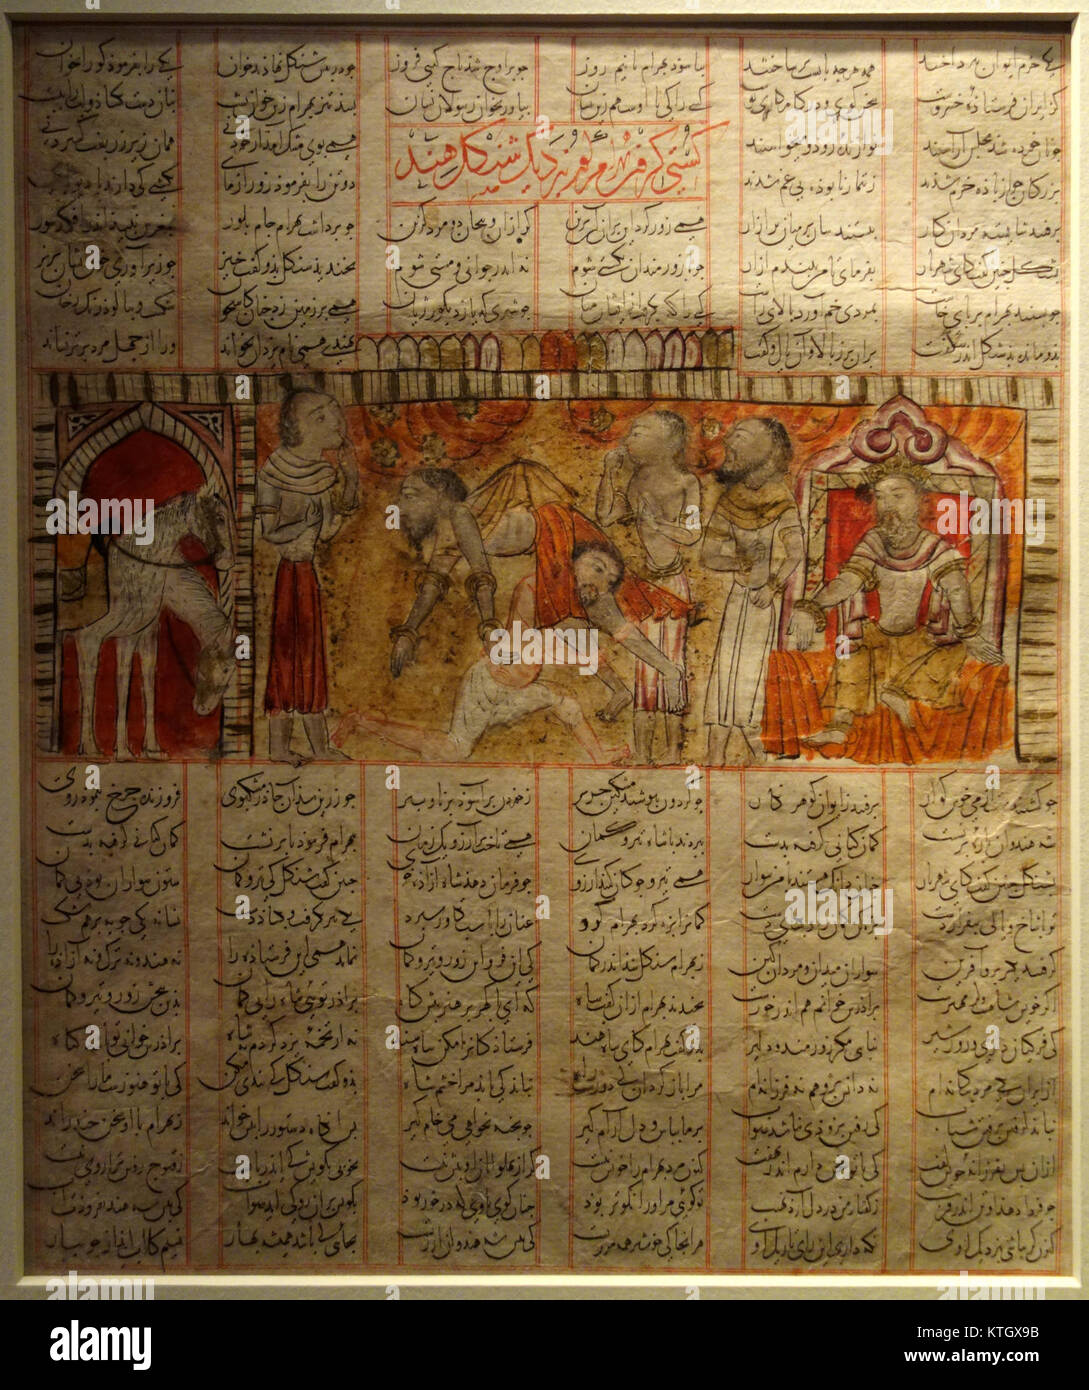 Bahram Gur ringt vor Shangol, unbekannter Künstler, Iran, Shiraz, 714 AH, 1341 AD, Seite von einer verteilten Shah nama Manuskript, Farbe auf Papier Cincinnati Art Museum DSC 04226 Stockfoto